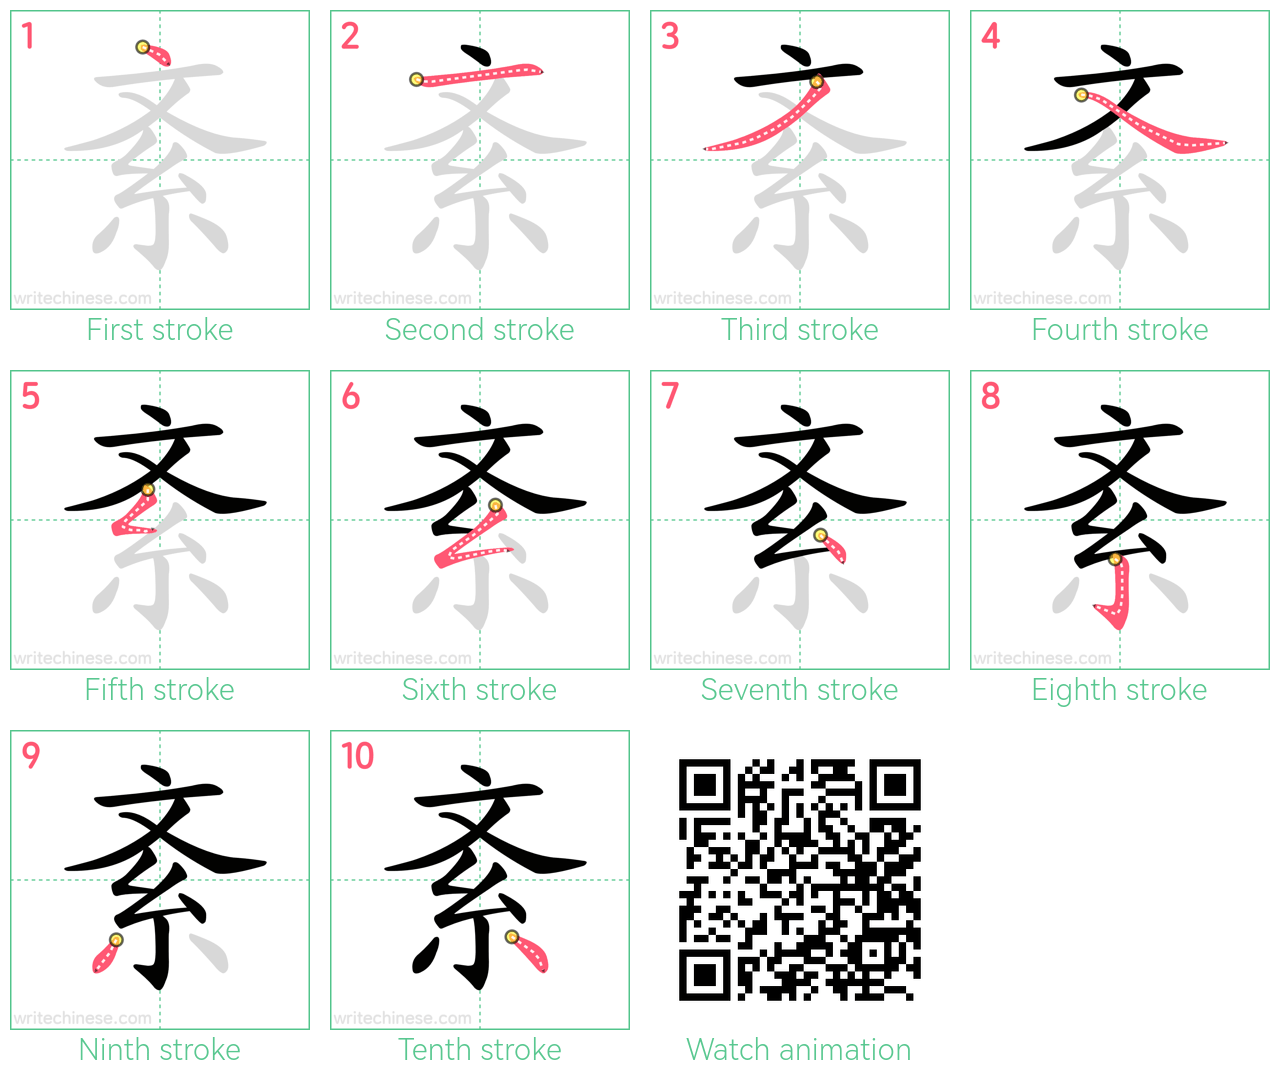 紊 step-by-step stroke order diagrams